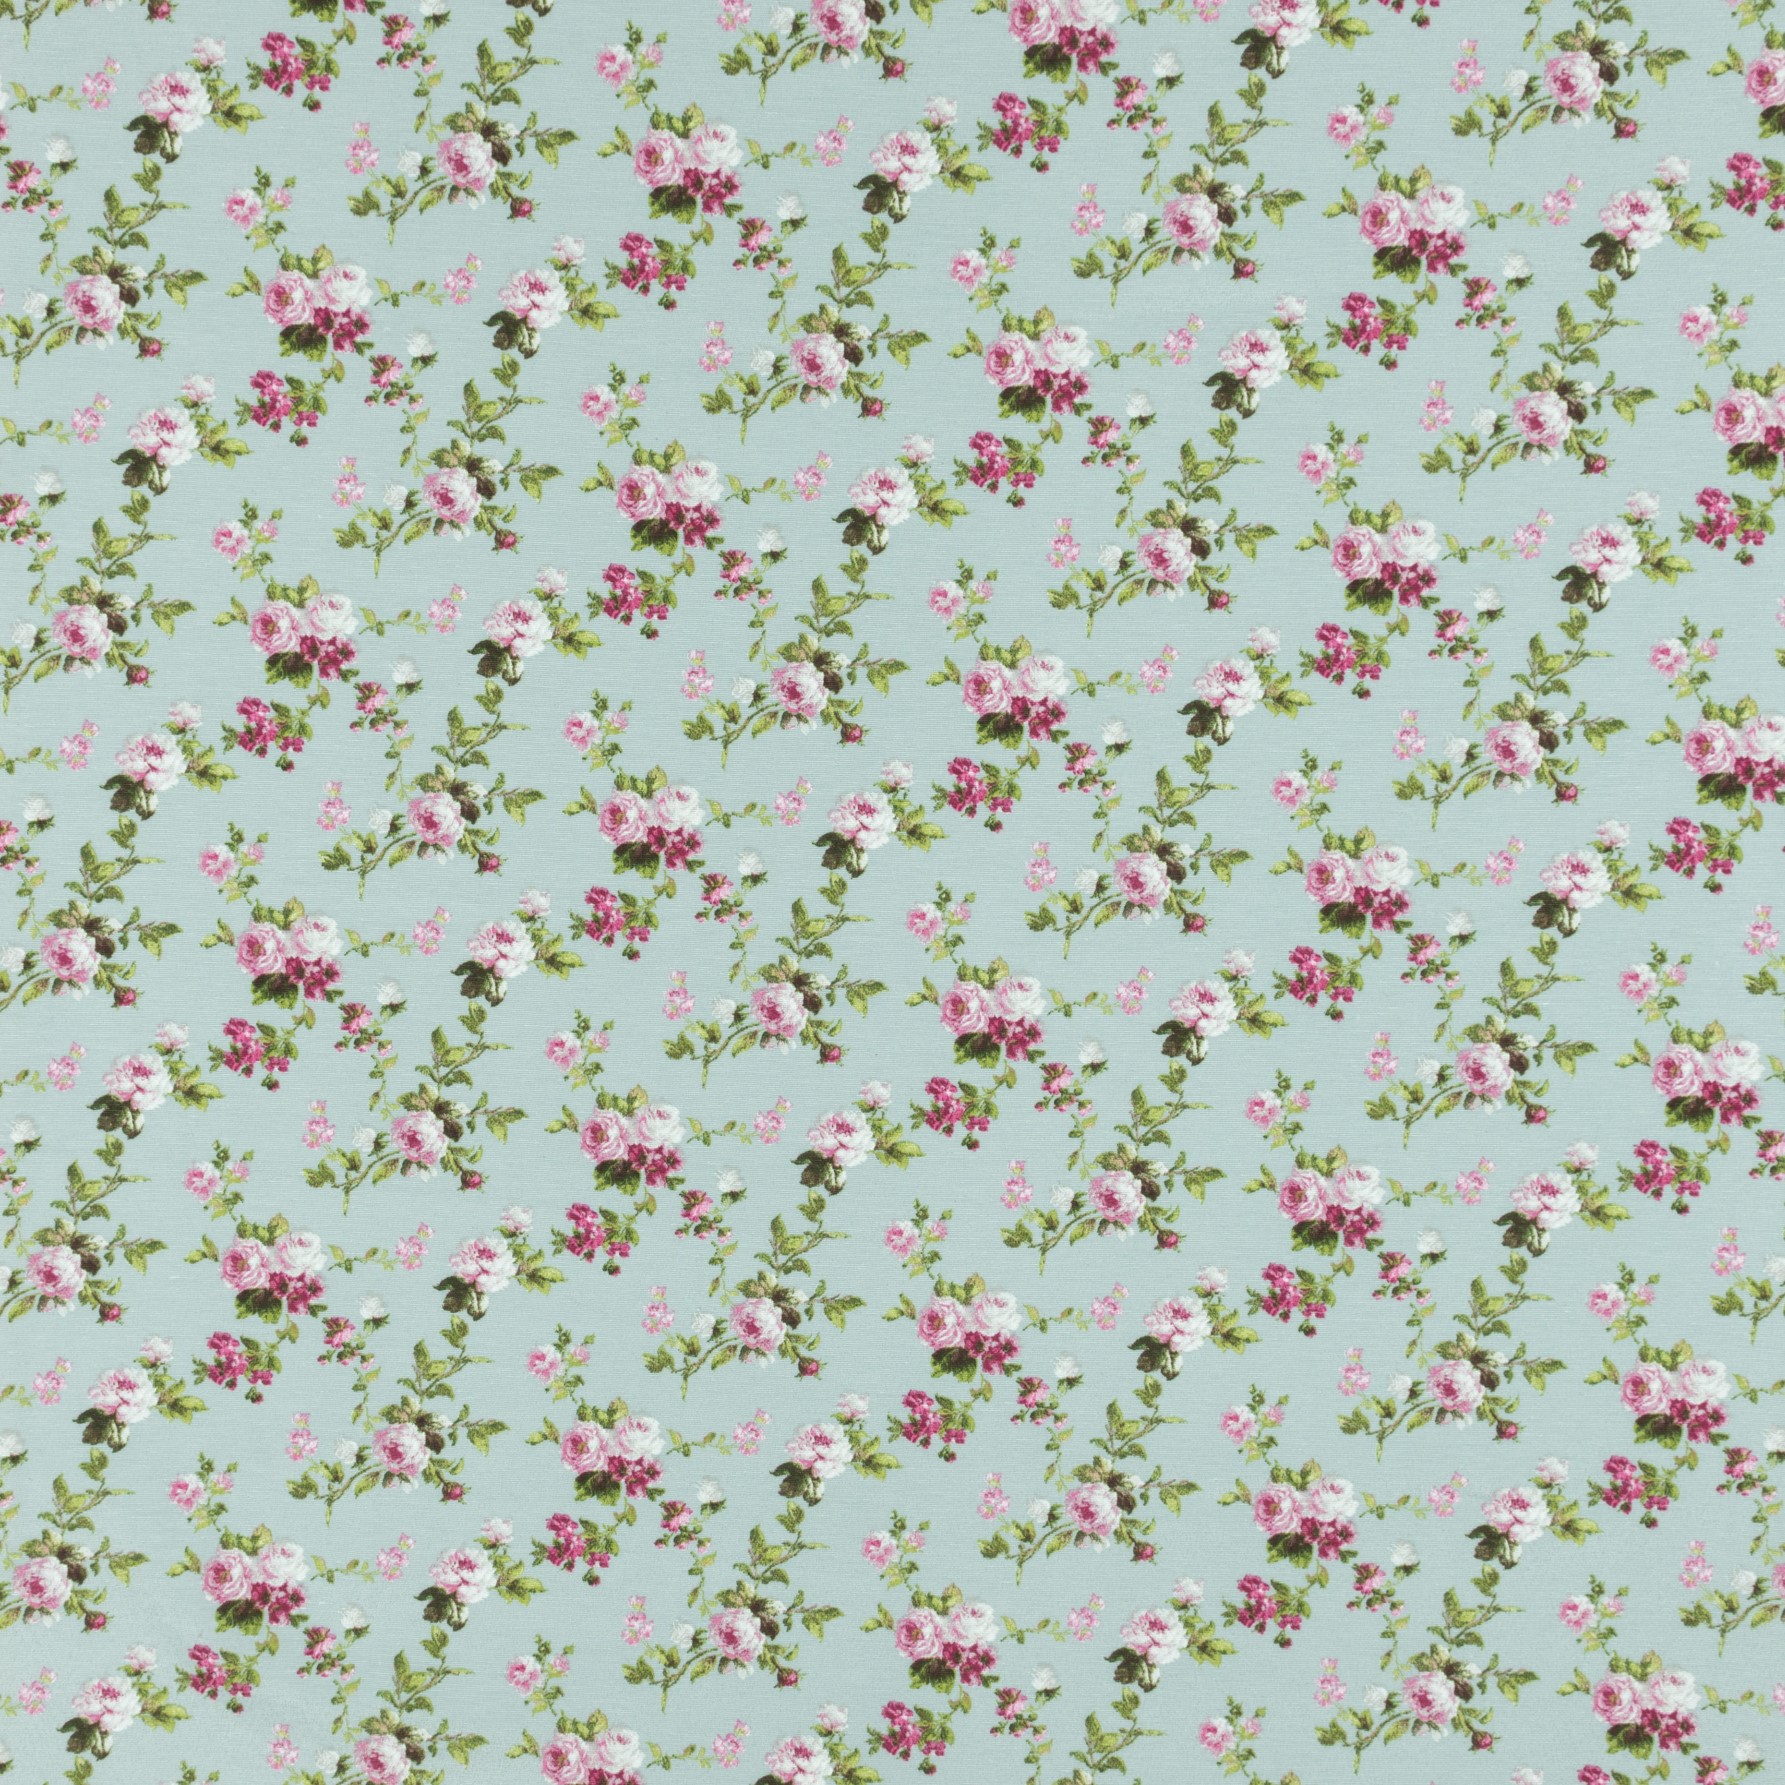 Декоративная ткань Флорал - Цветы мелкие фуксия, фон лазурь, размер 50х70 см, хлопок 60%, полиэстер 40%, плотность 160